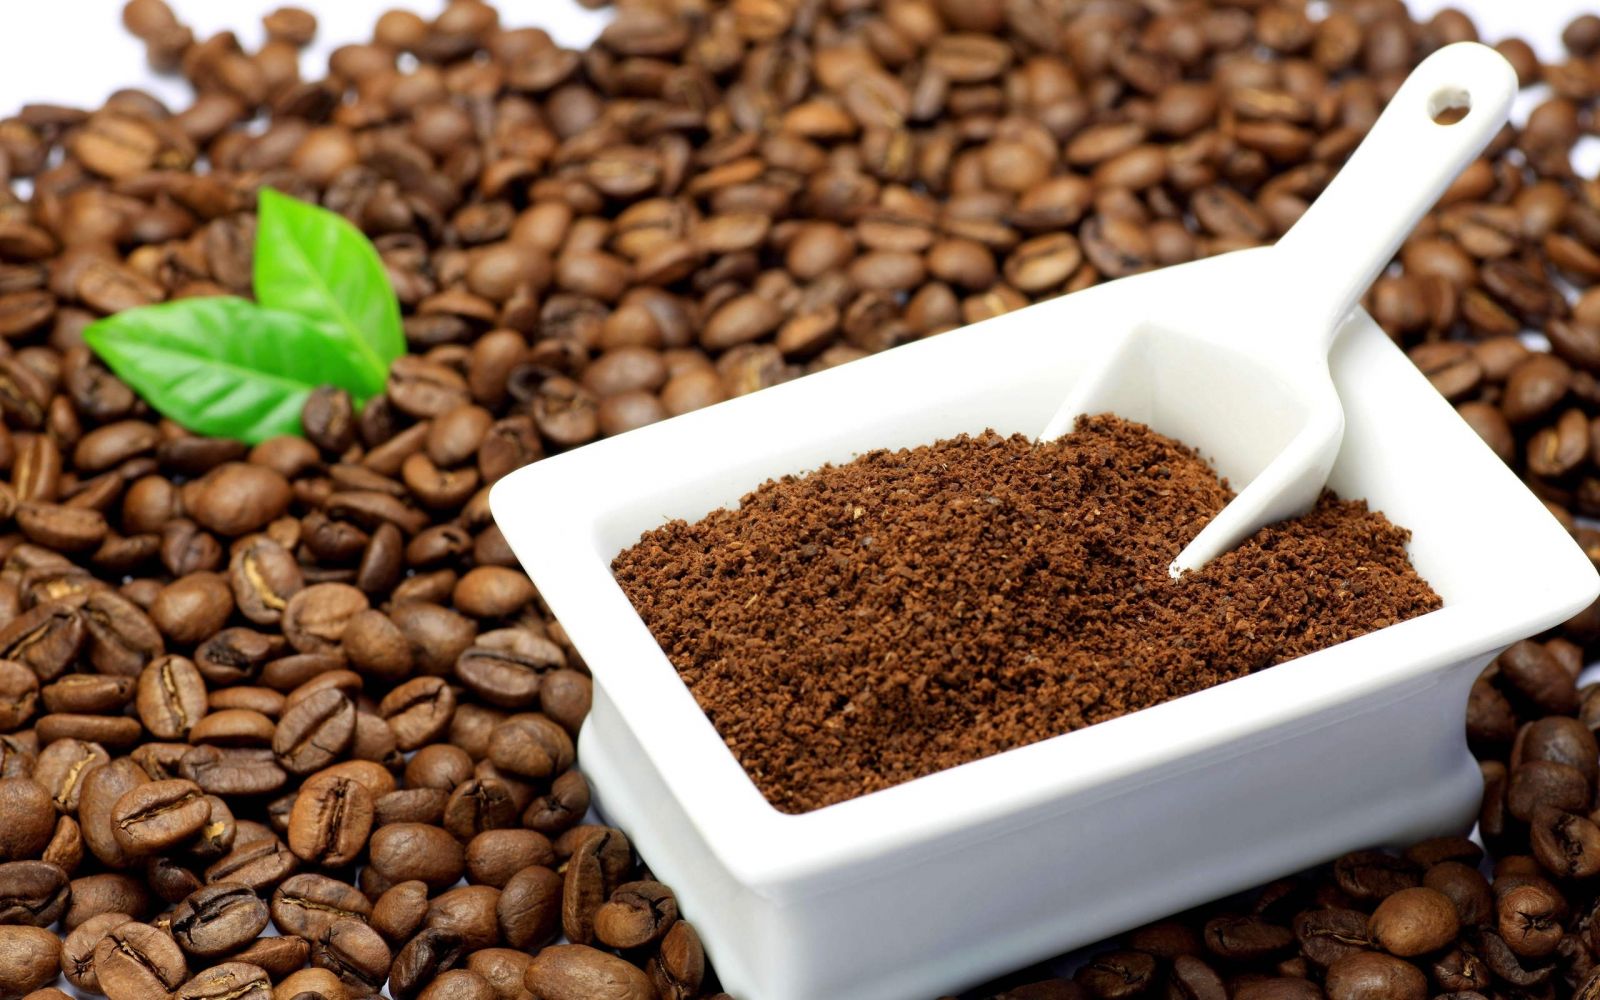 Bã cà phê với dưỡng chất chống oxi hóa dồi dào được sử dụng để làm trắng da hiệu quả tại nhà